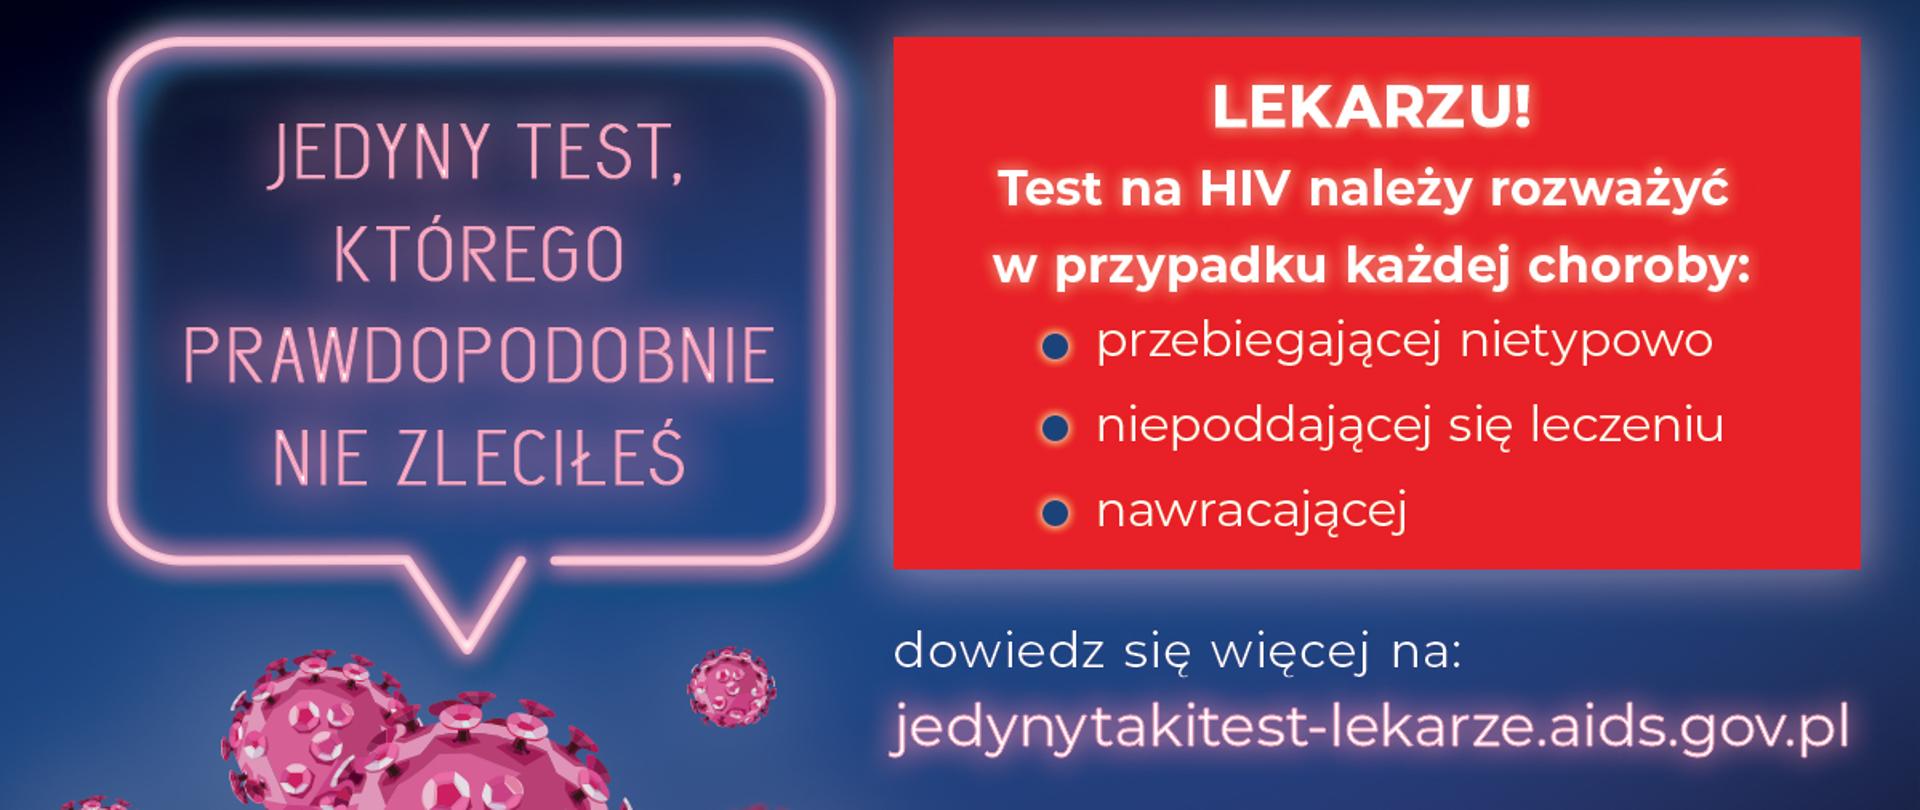 Grafika przedstawia na ciemnym tle kilka wirusów HIV w kolorze różowym, u góry napis stylizowany na neon „Jedyny taki test, którego prawdopodobnie nie zleciłeś”. U dołu na czerwonym tle napis: „Lekarzu! Test na HIV należy rozważyć w przypadku choroby: przebiegającej nietypowo, niepoddającej się leczeniu, nawracającej”. Przy dolnym marginesie znajdują się logo Ministerstwa Zdrowia, KC ds. AIDS, OR kod oraz adres strony internetowej: jedynytakitest-lekarze.aids.gov.pl